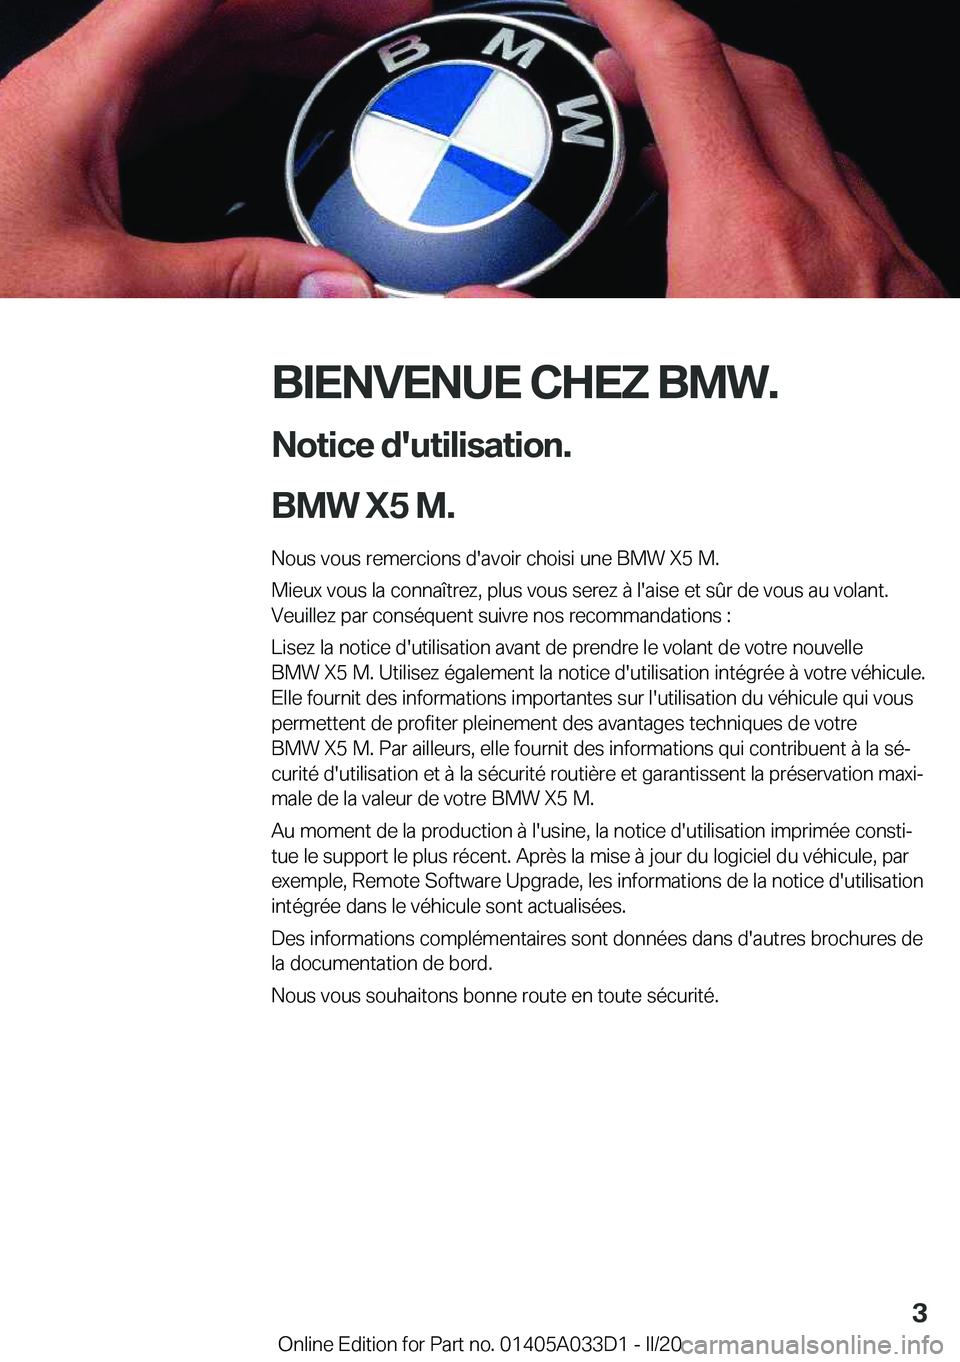 BMW X5 M 2020  Notices Demploi (in French) �B�I�E�N�V�E�N�U�E��C�H�E�Z��B�M�W�.�N�o�t�i�c�e��d�'�u�t�i�l�i�s�a�t�i�o�n�.
�B�M�W��X�5��M�. �N�o�u�s��v�o�u�s��r�e�m�e�r�c�i�o�n�s��d�'�a�v�o�i�r��c�h�o�i�s�i��u�n�e��B�M�W��X�5